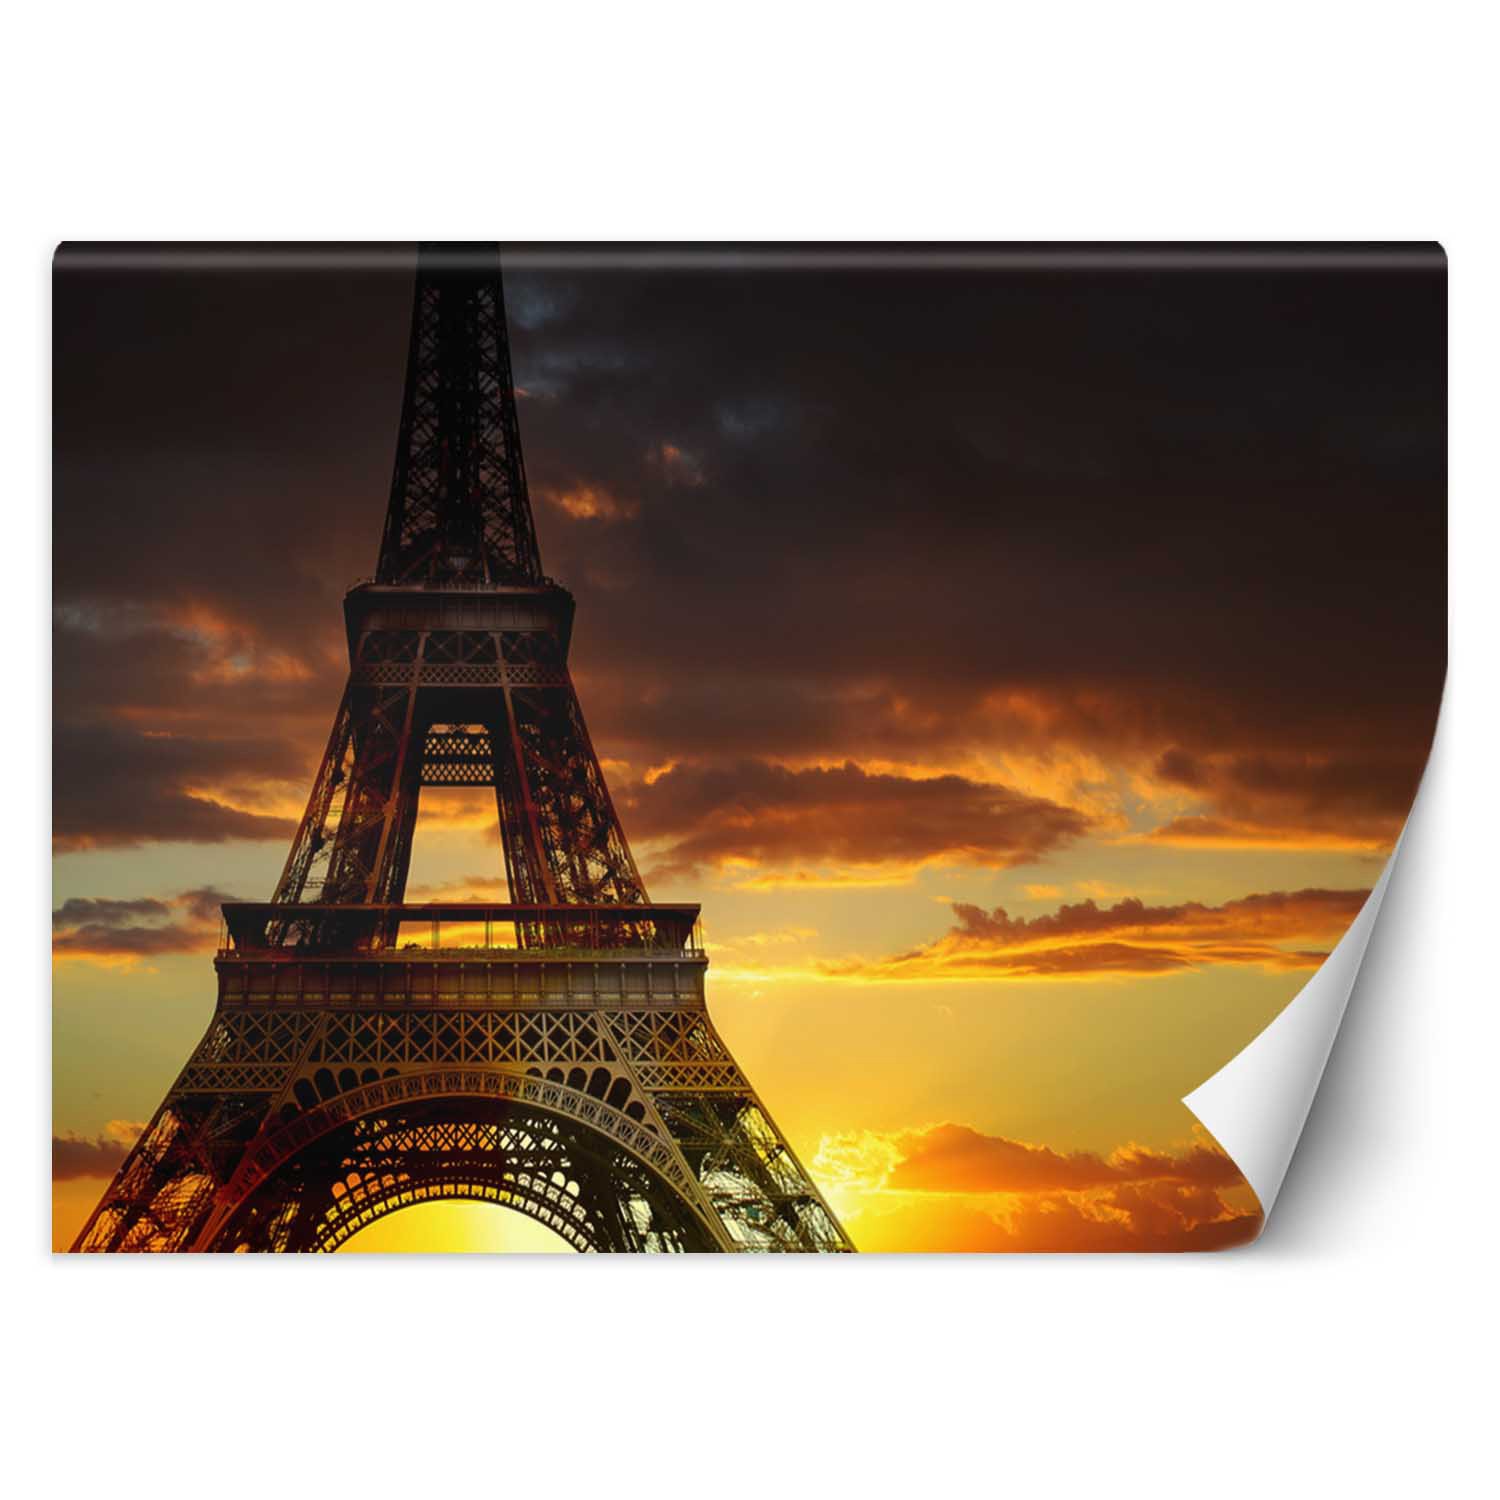 Trend24 – Behang – Eiffeltoren Bij Zonsondergang – Vliesbehang – Fotobehang – Behang Woonkamer – 450x315x2 cm – Incl. behanglijm